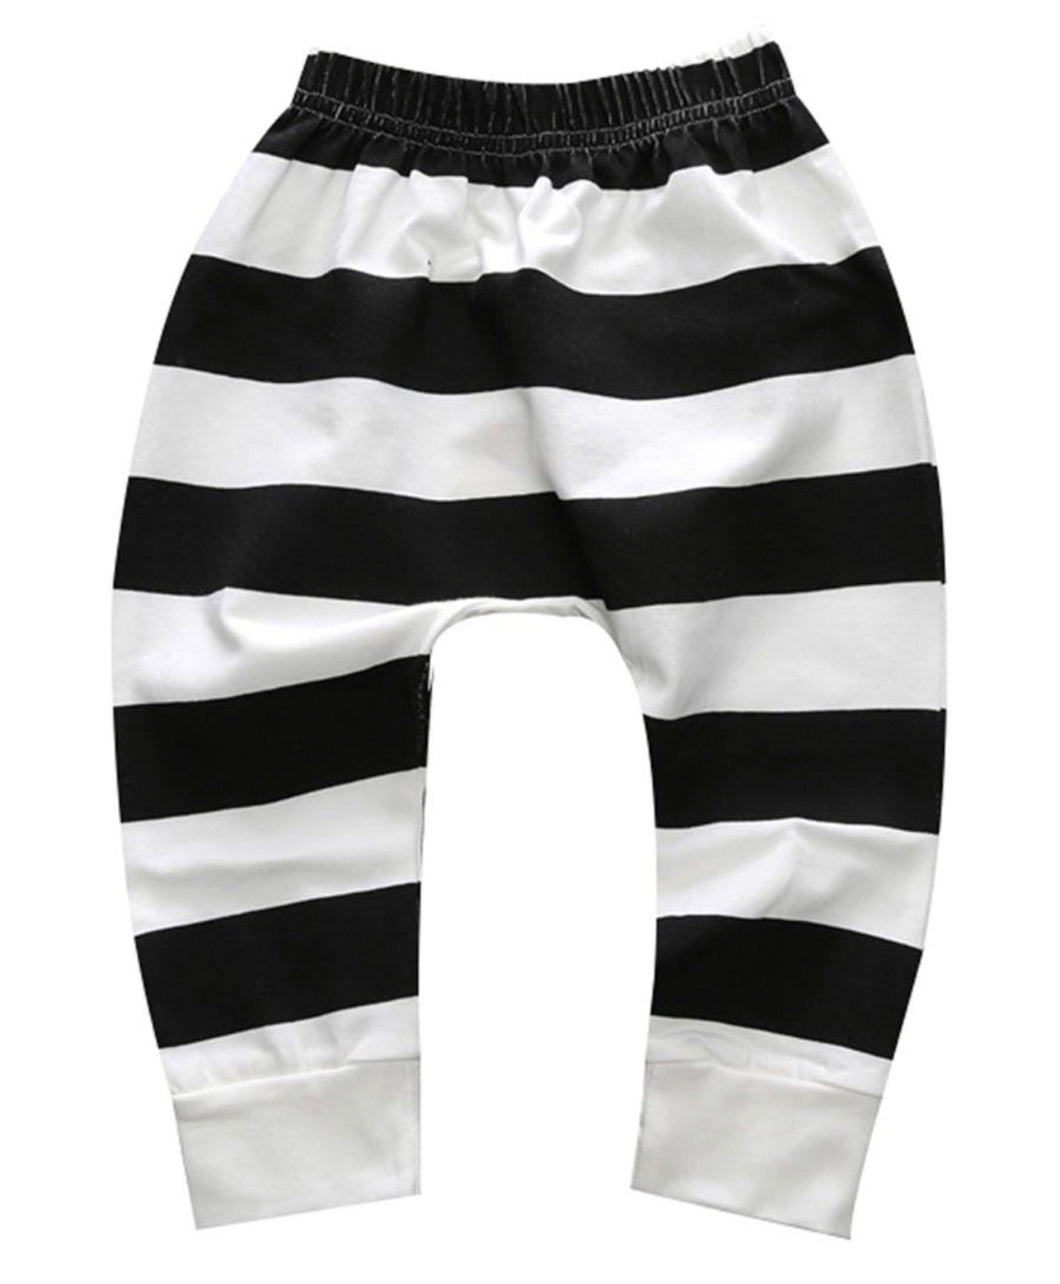 Black & White Striped Pant